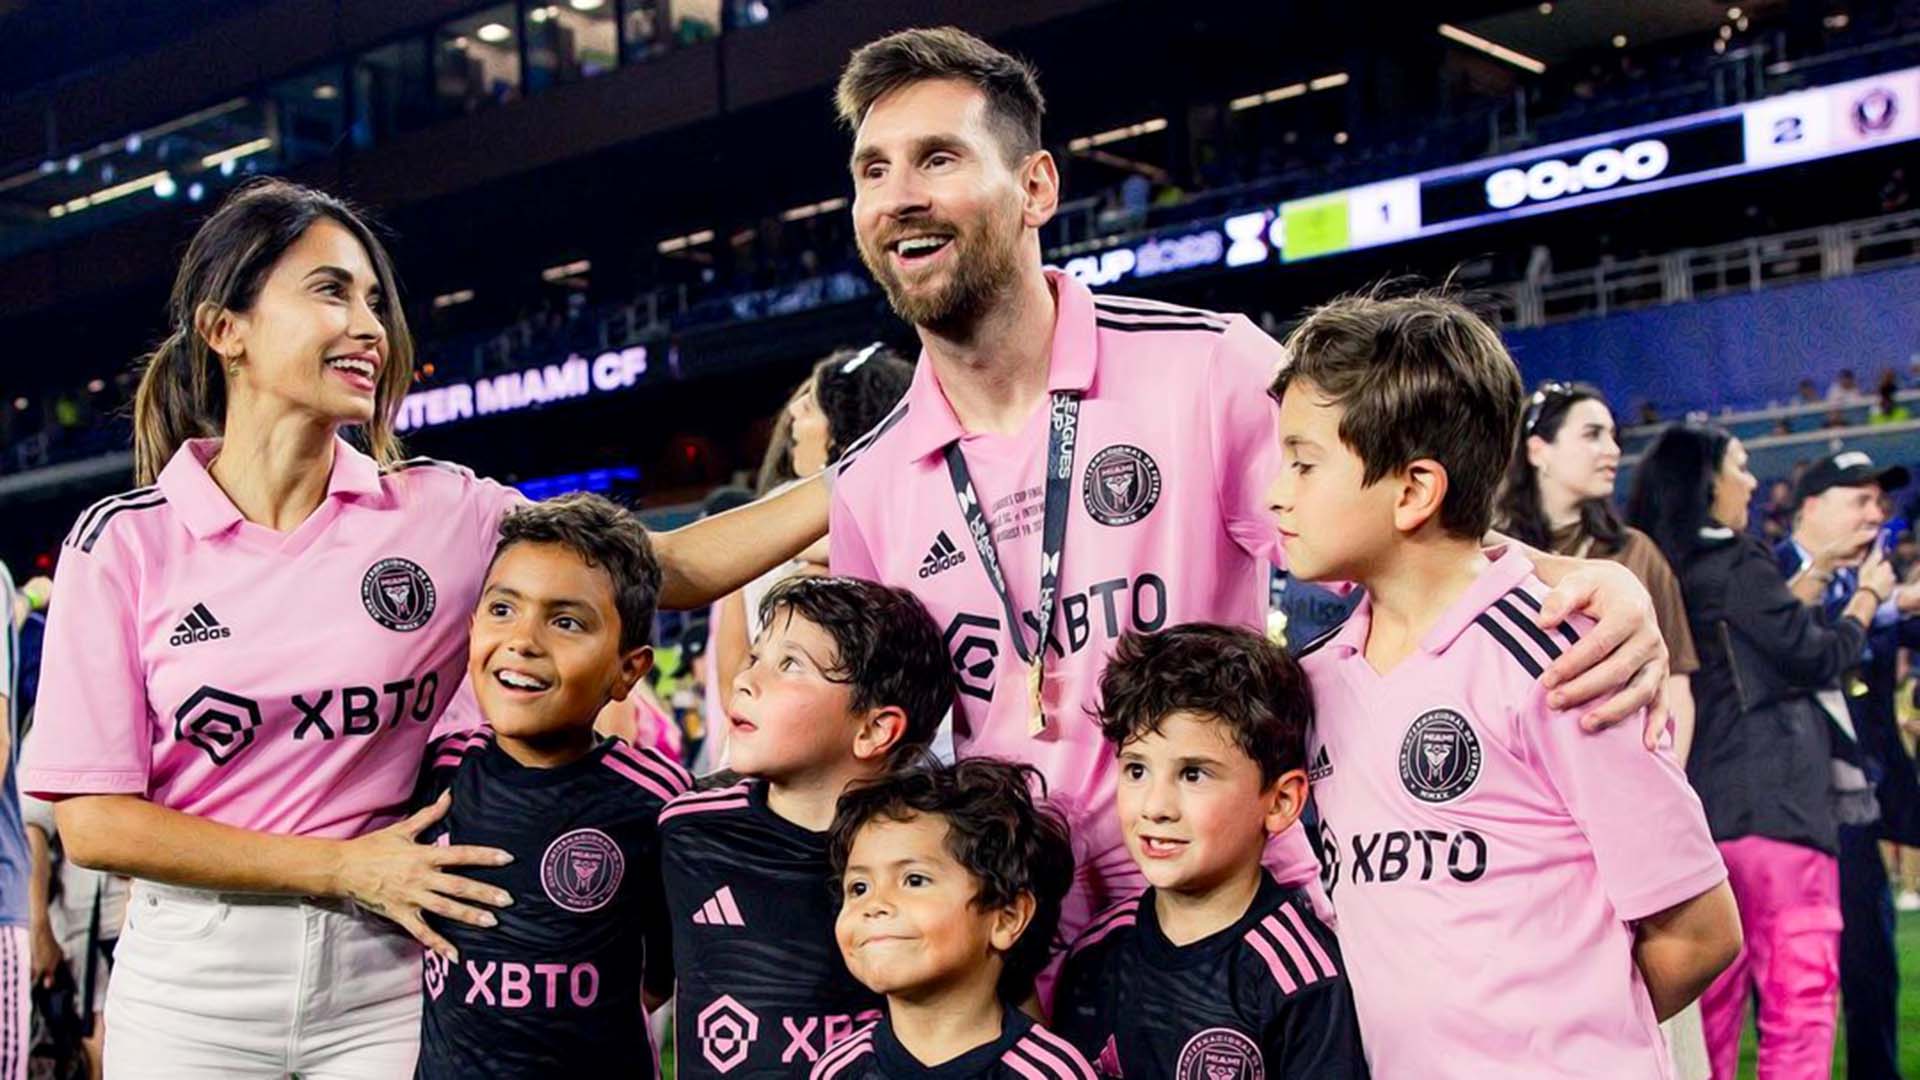 La afición se ha volcado con el equipo y a Messi se le nota mucho más feliz que en París: “Me hacen sentir en mi casa. Para nosotros fue espectacular desde que llegamos”.